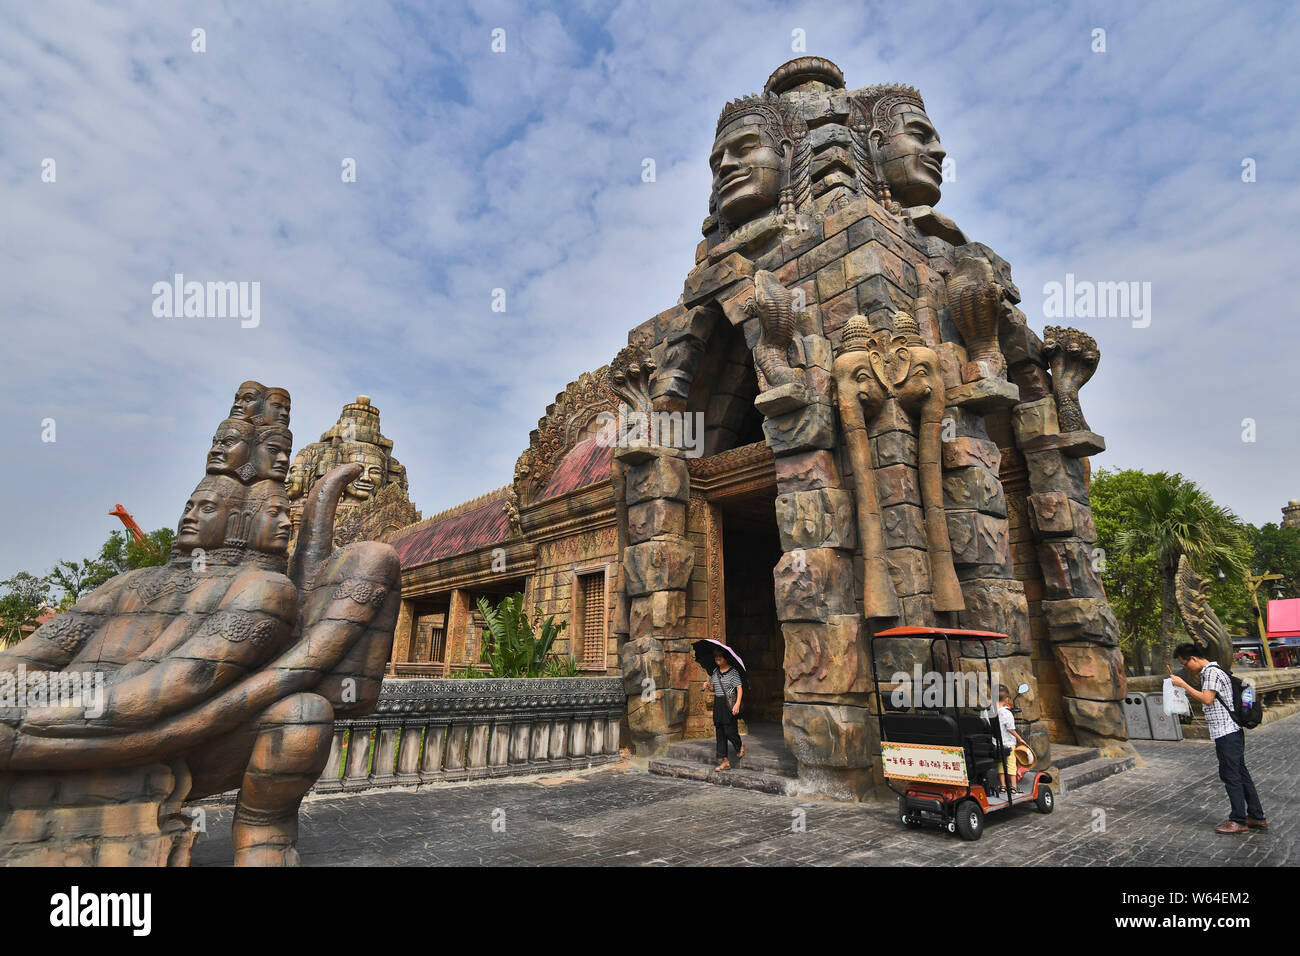 Turisti visitano una replica della Cambogia Angkor Wat tempio complesso a una attrazione turistica in Nanning city, a sud della Cina di Autonoma di Guangxi Zhuang Regi Foto Stock